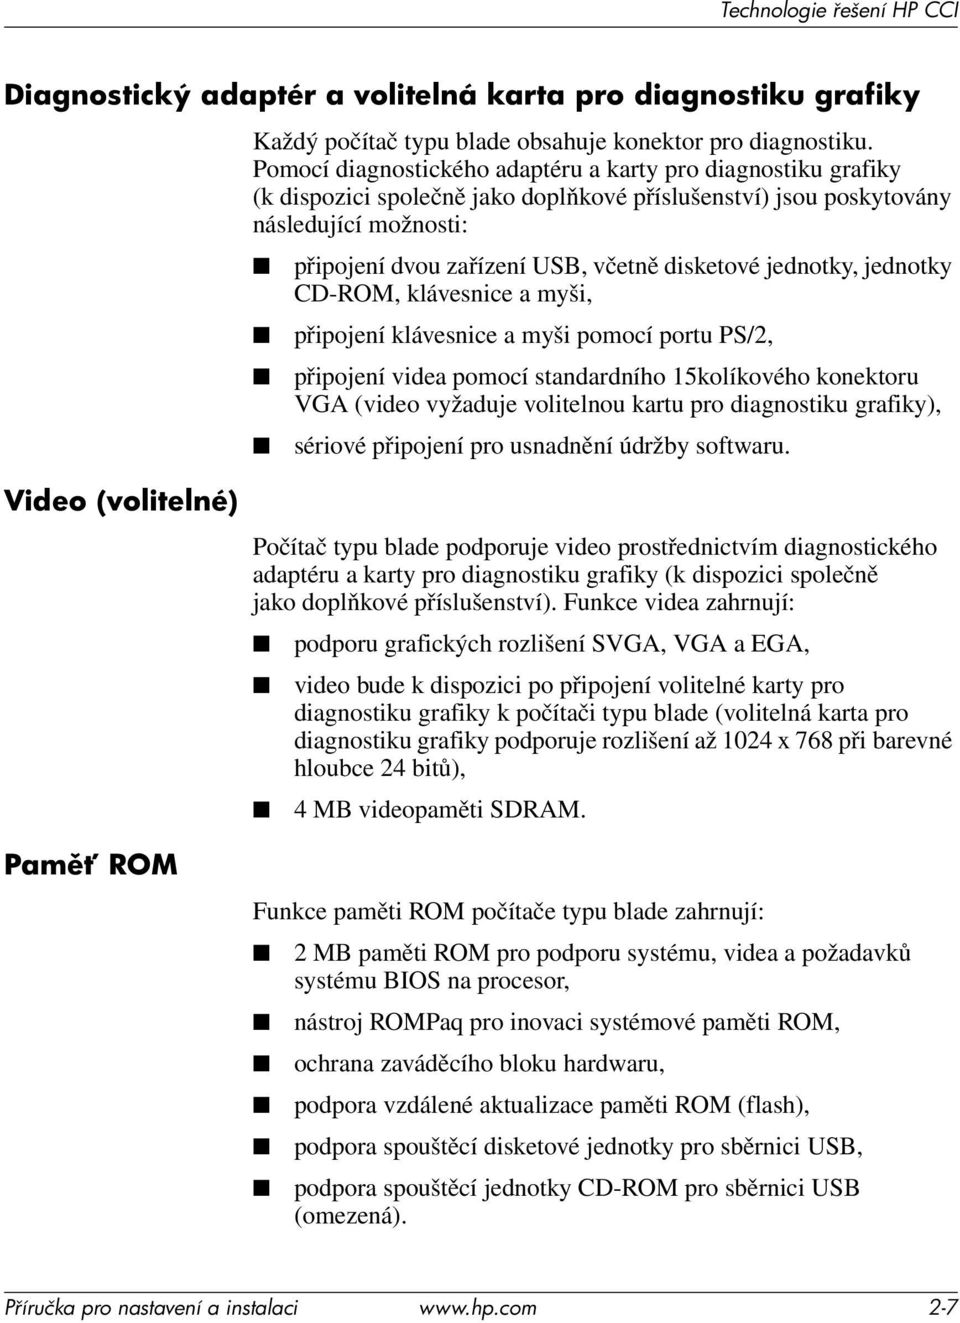 jednotky, jednotky CD-ROM, klávesnice a myši, připojení klávesnice a myši pomocí portu PS/2, připojení videa pomocí standardního 15kolíkového konektoru VGA (video vyžaduje volitelnou kartu pro